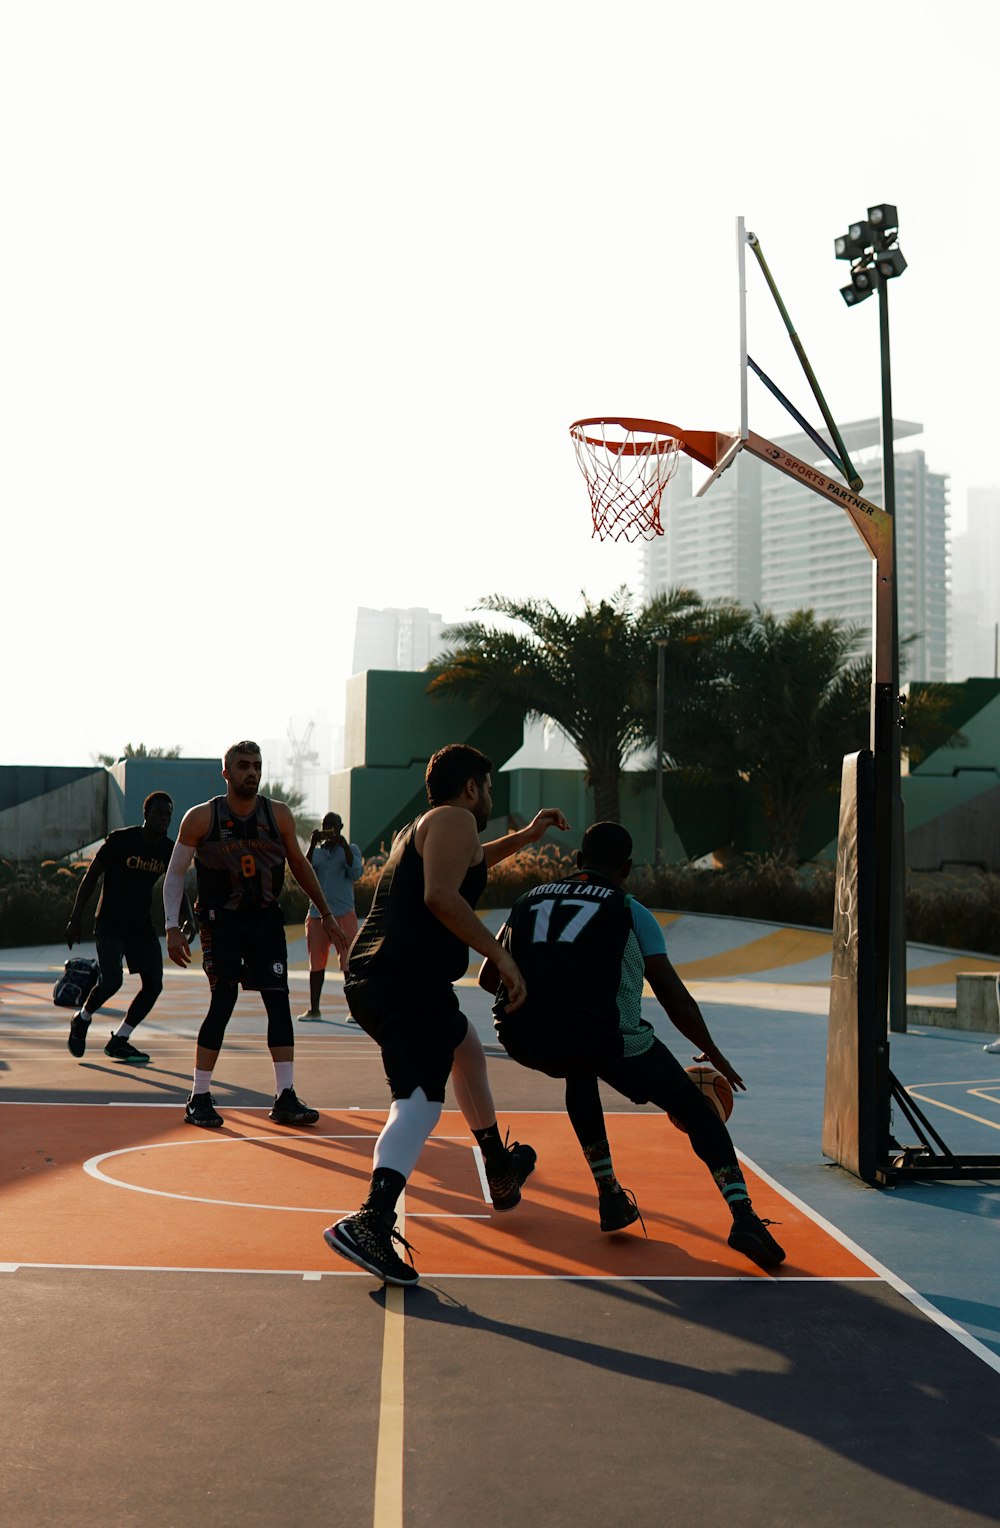 people playing basketball during daytime